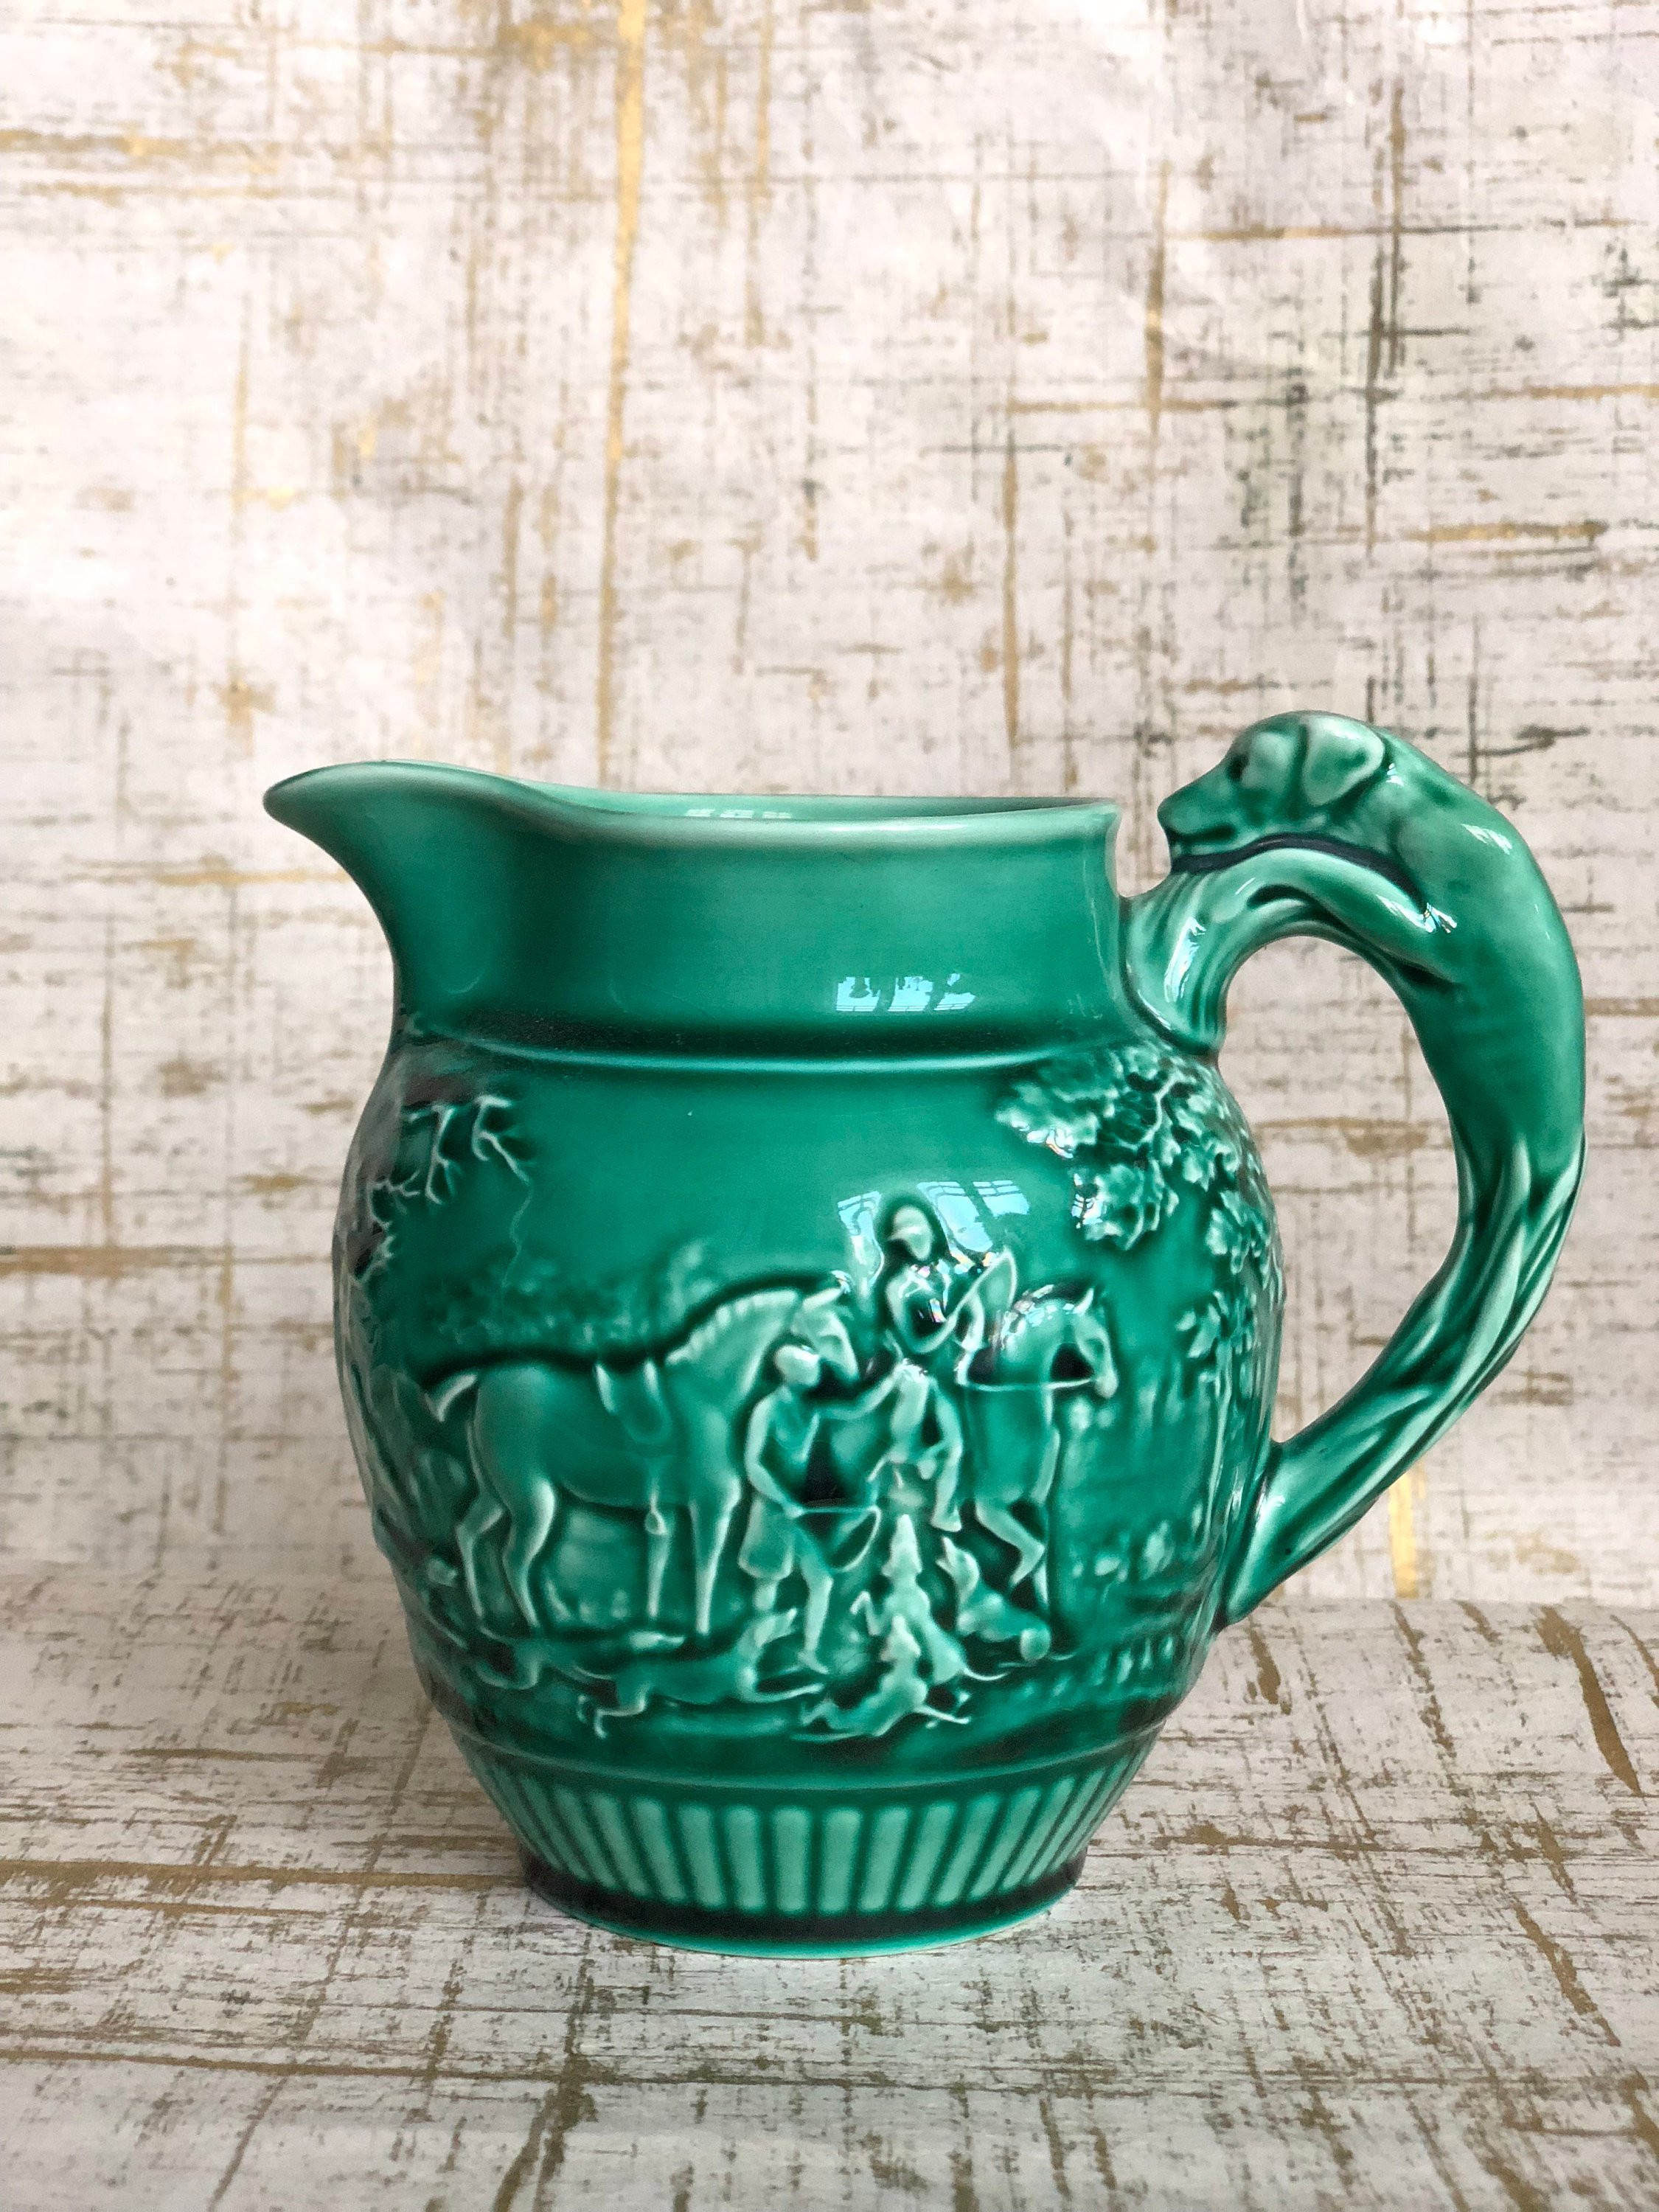 15 Wonderful Royal Satsuma Vase 2024 free download royal satsuma vase of wedgwood large etruria green jug pitcher ewer horse hunting etsy in dc29fc294c28ezoom